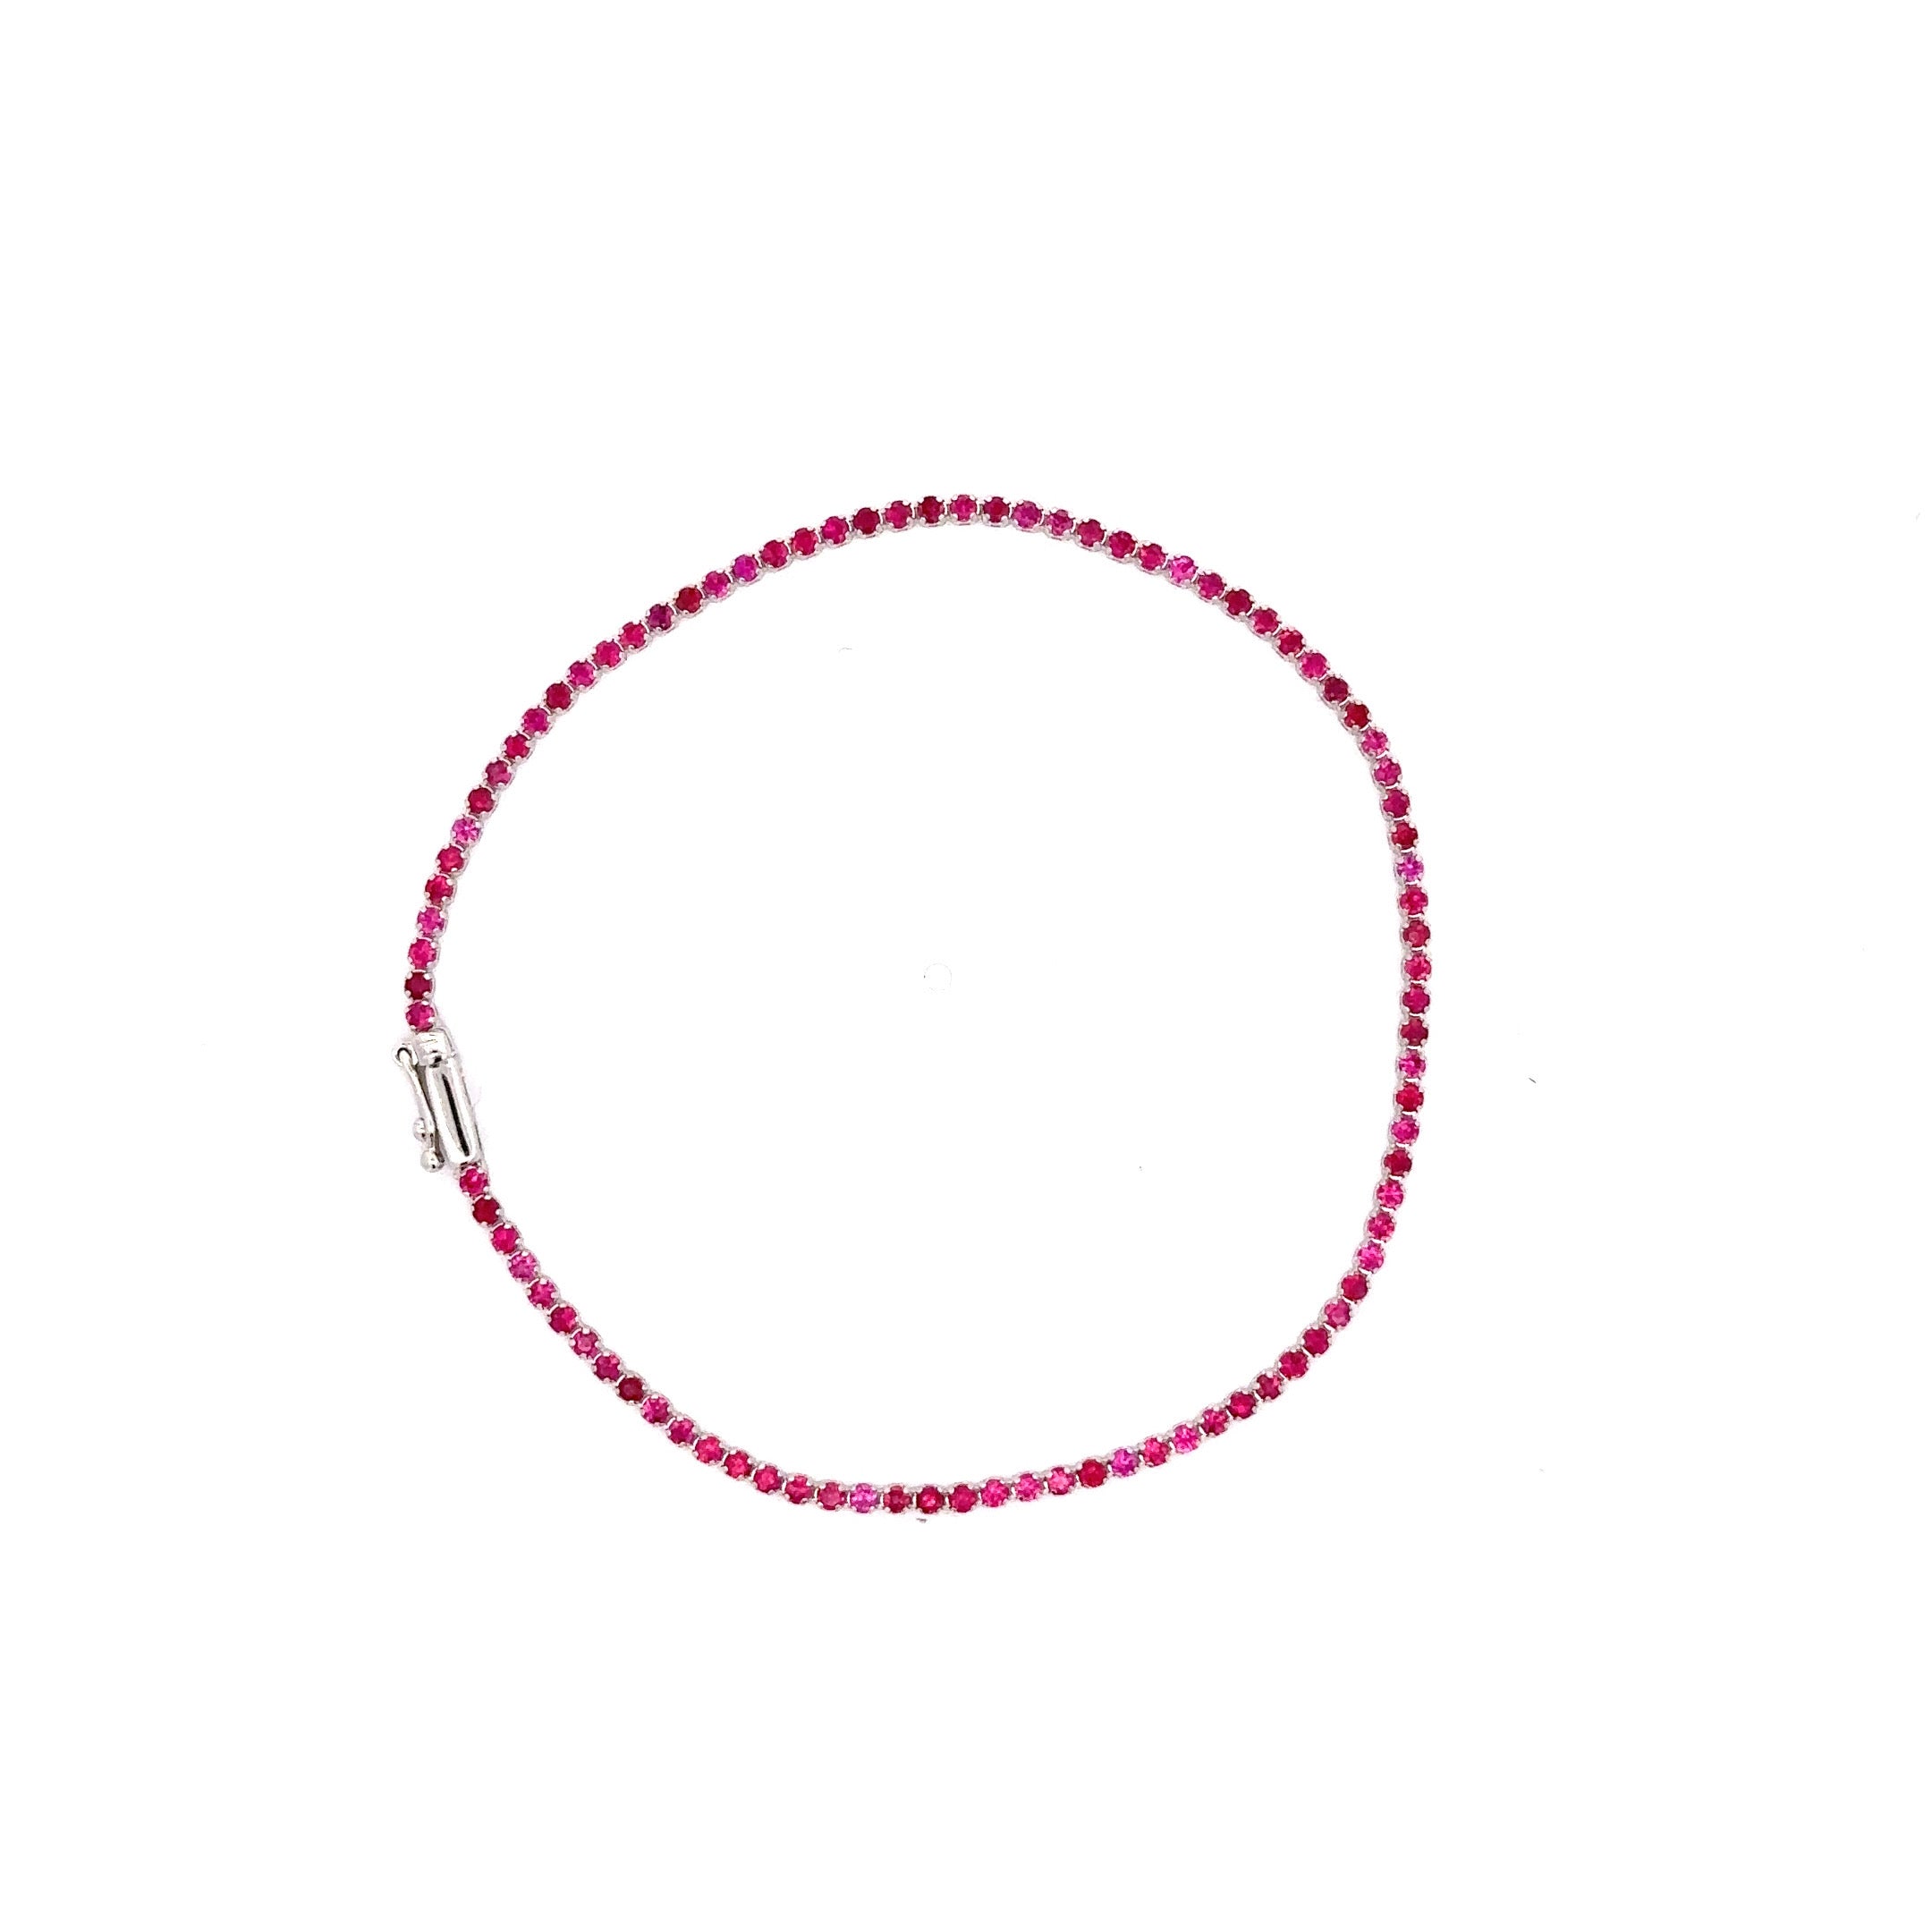 WD1204 18Kt Gold Hot Pink Sapphire Tennis Bracelet